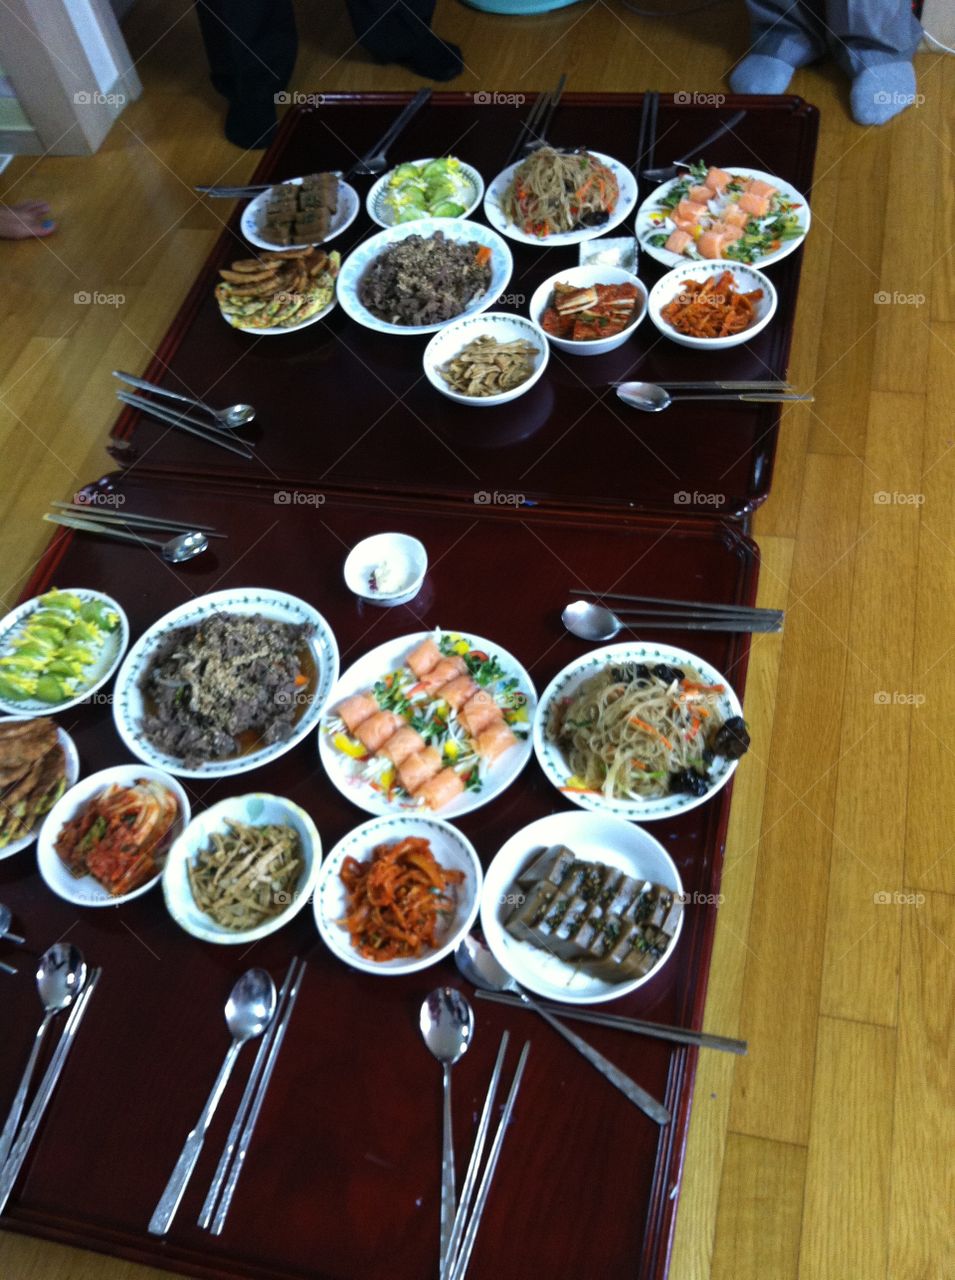 dinner Korean way. Korean dinner table